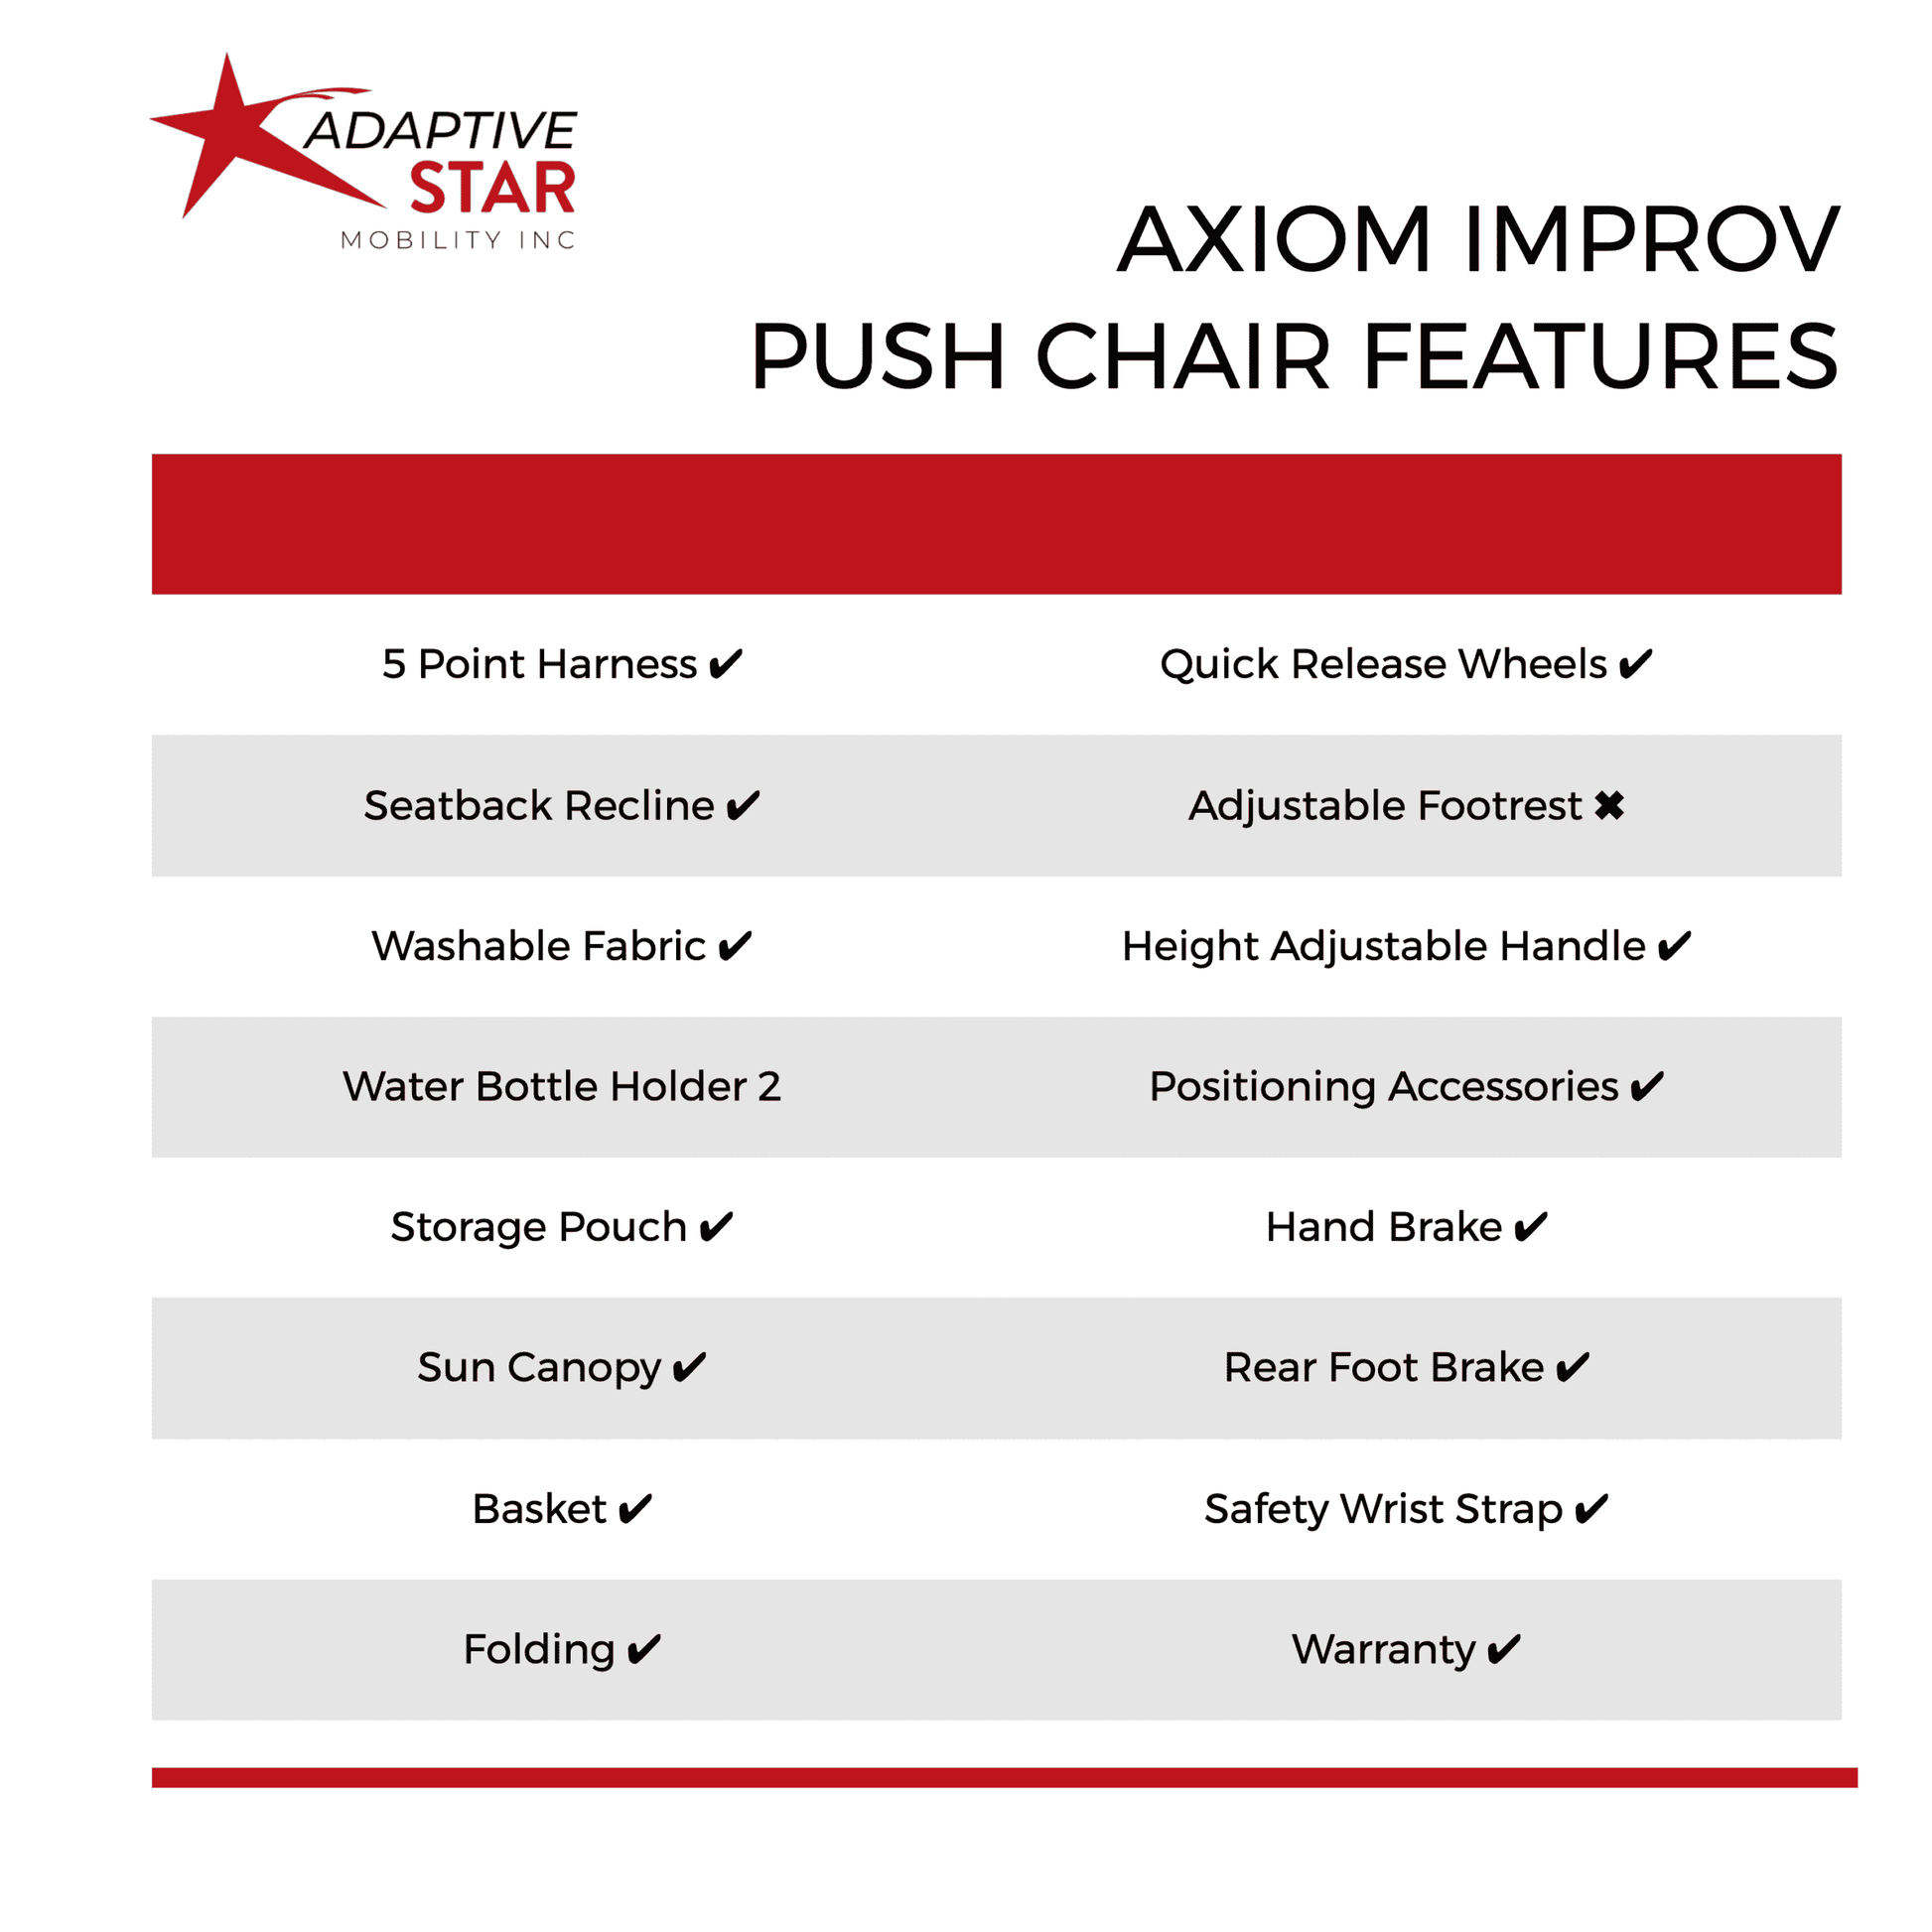 Axiom Push Chair Improv features